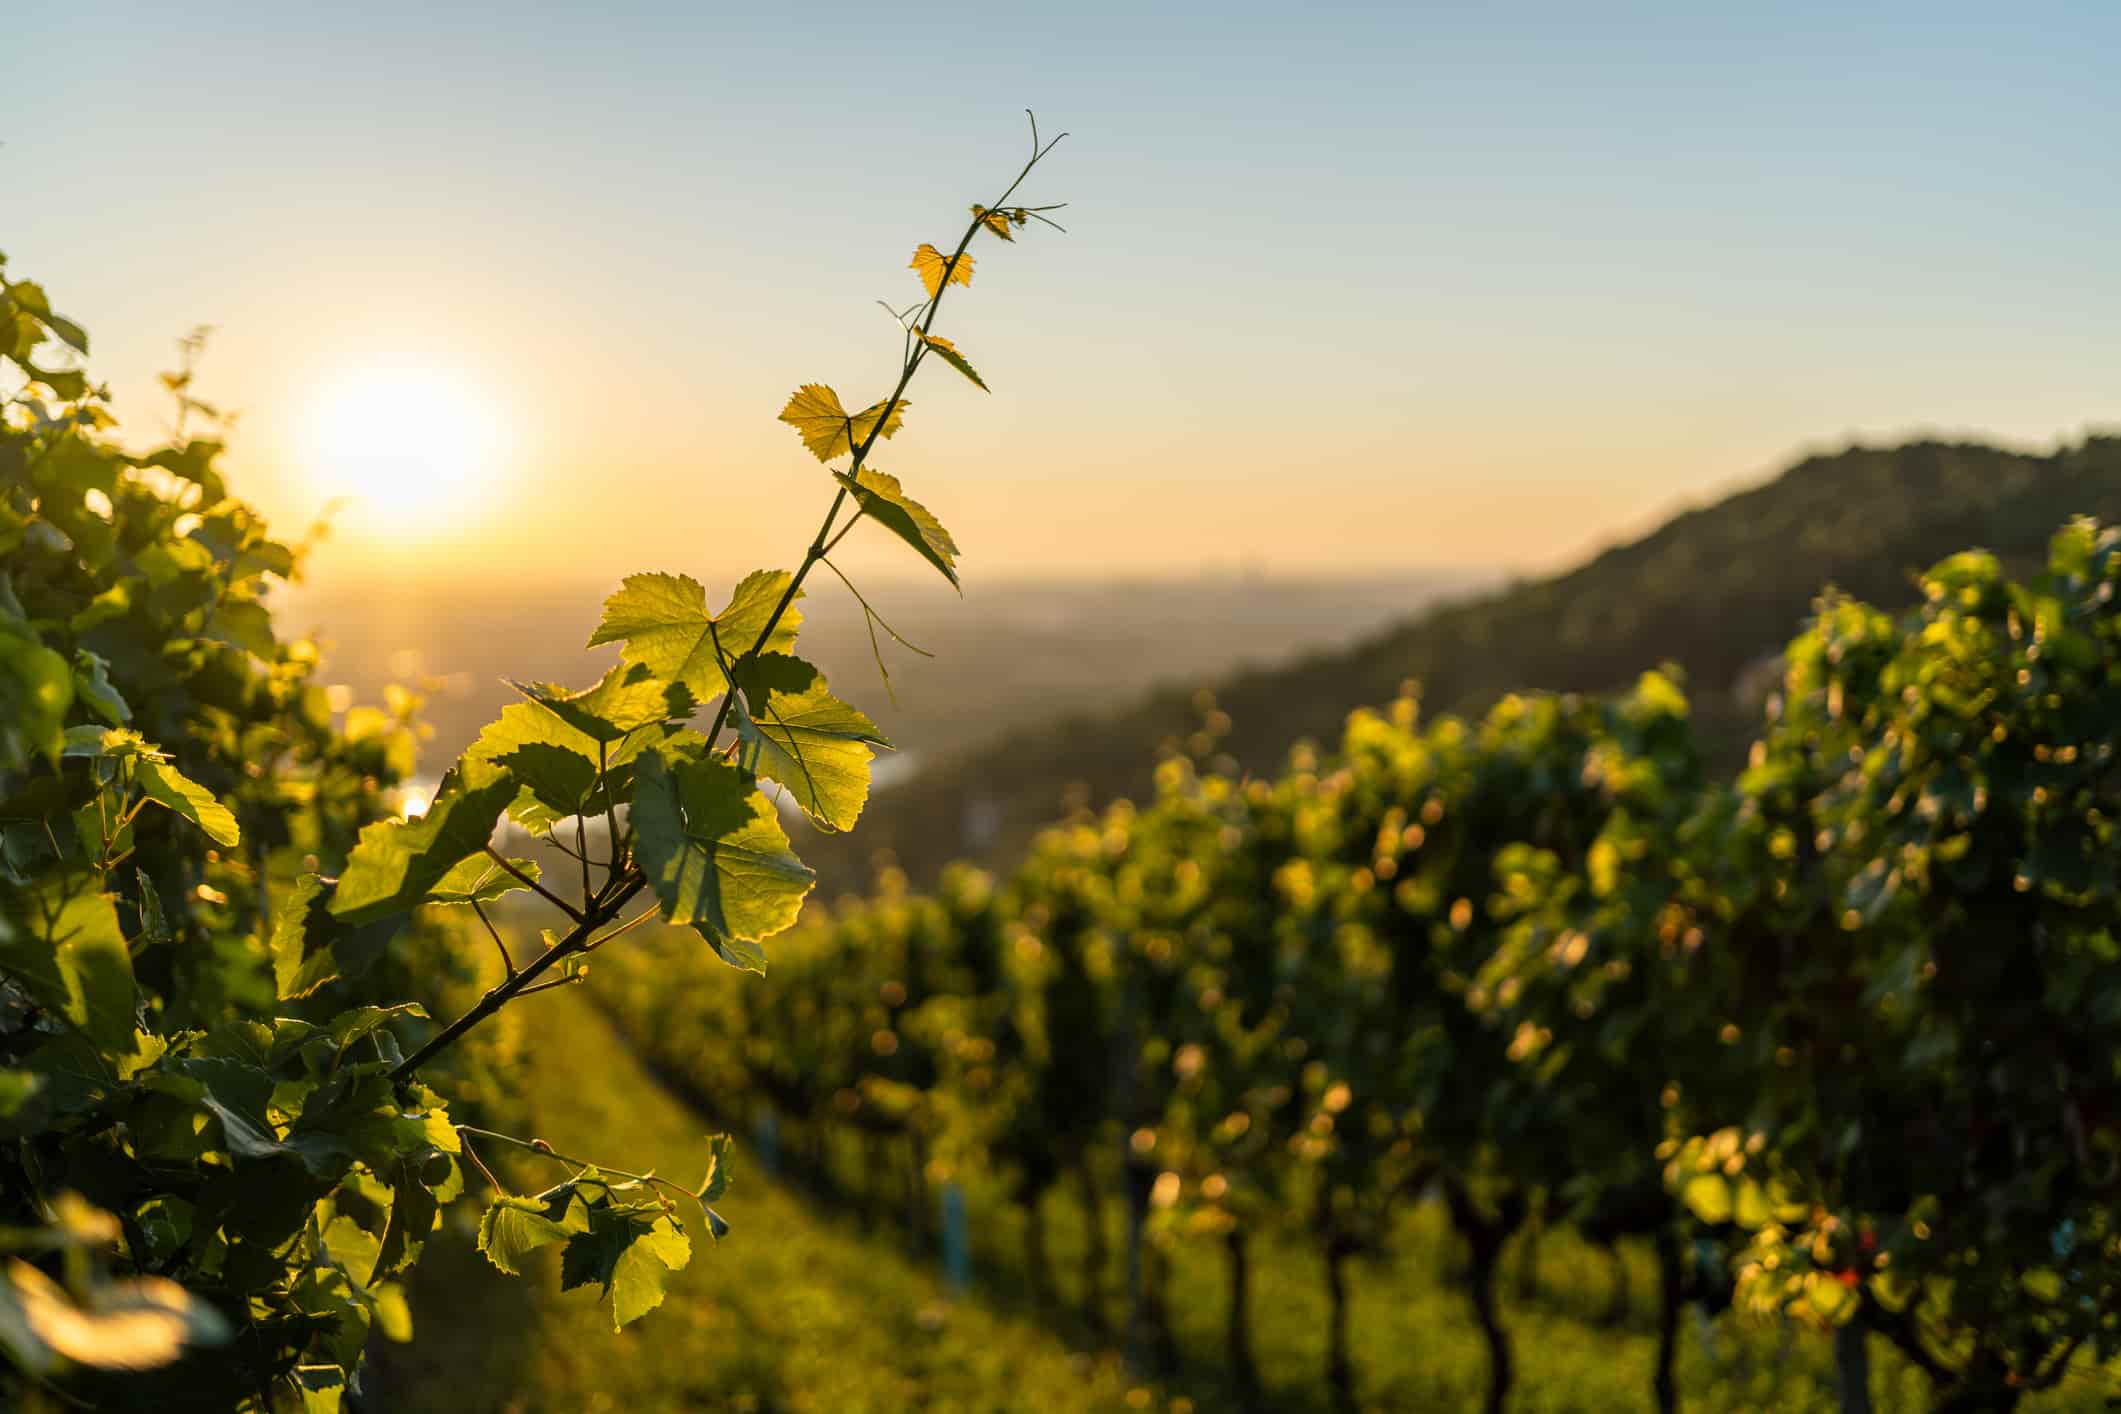 landscape of a vineyard